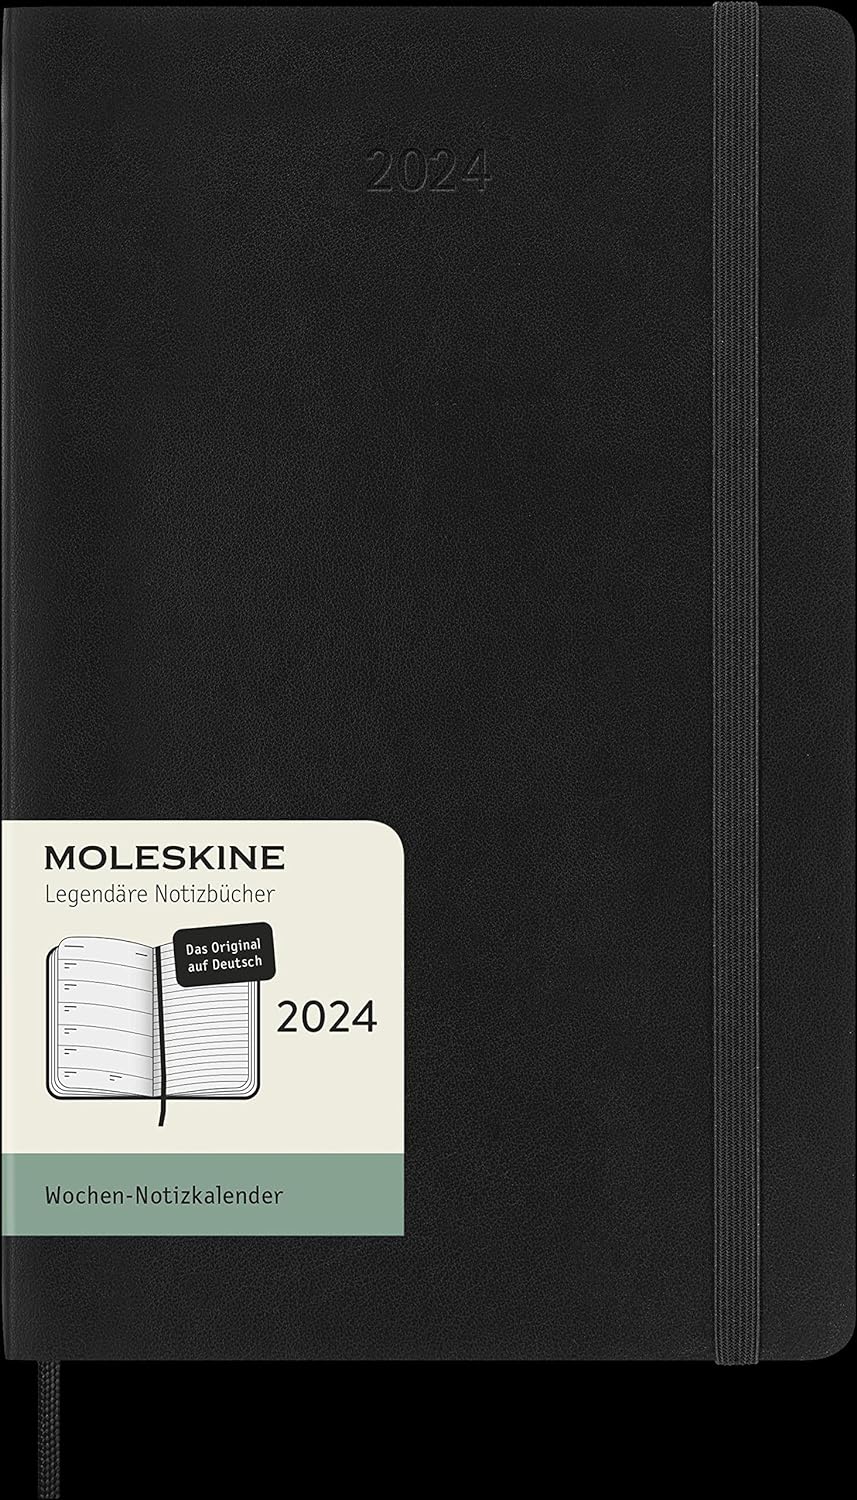 TRACORRI L'ANNO con STILE con l'Agenda Moleskine 2024: su